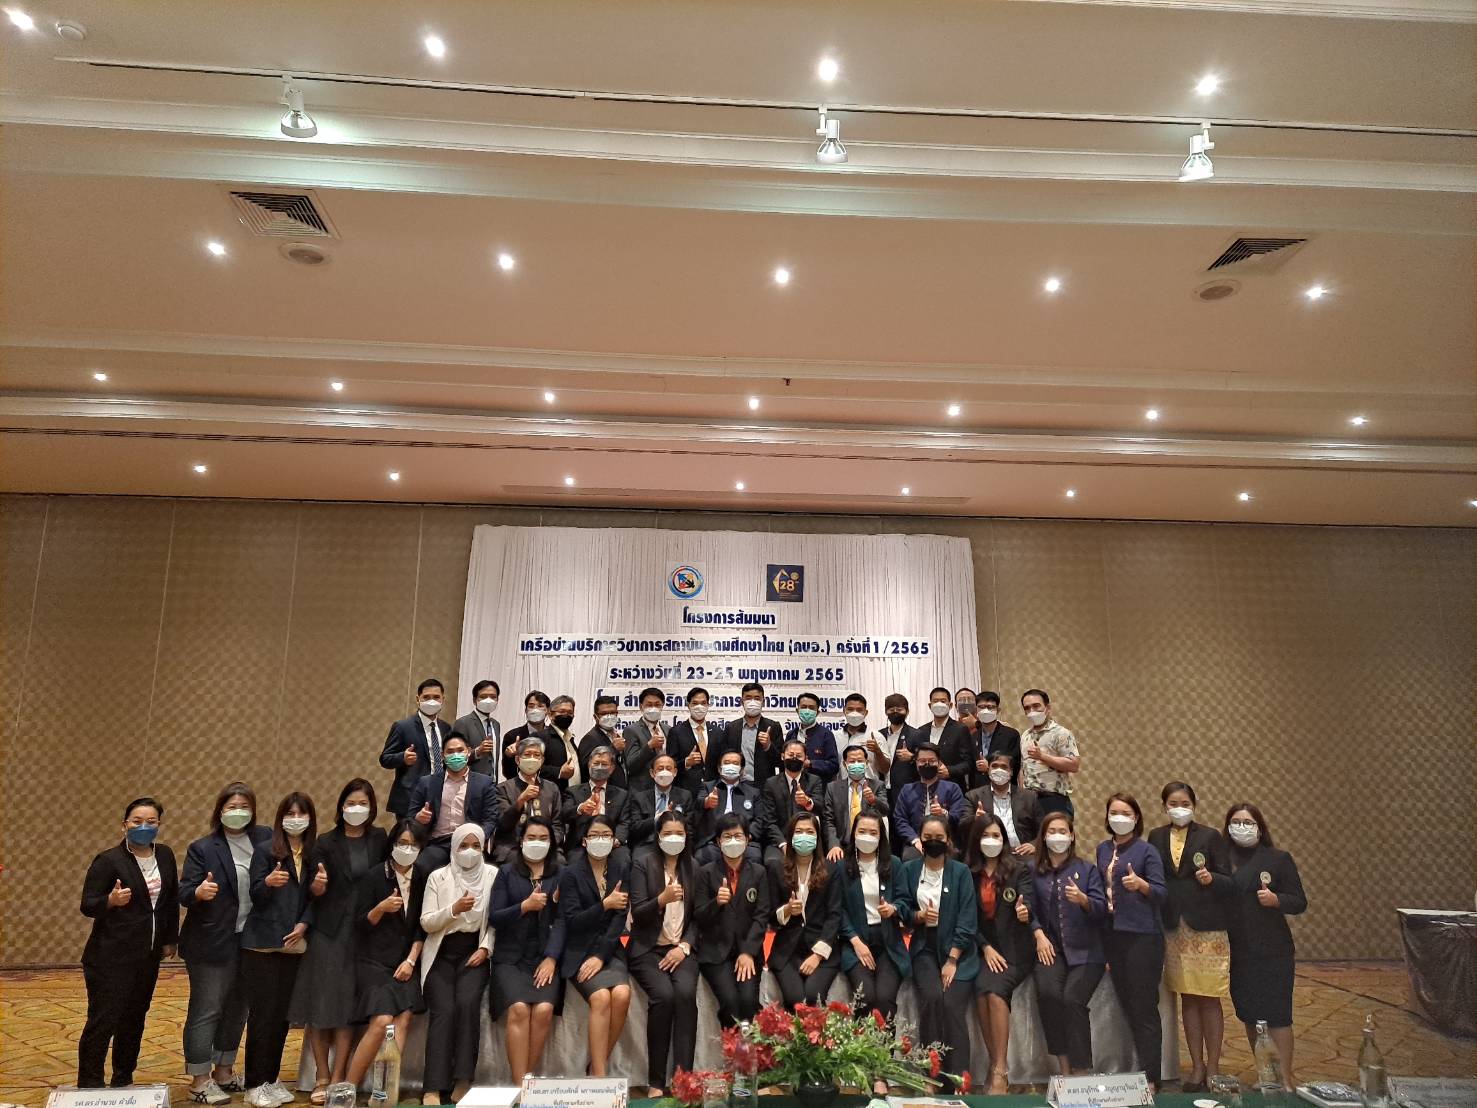 ผู้ช่วยผู้อำนวยการเทคโนธานีฝ่ายสำนักงานบริการวิชาการ ปรับแปลง ถ่ายทอดและพัฒนาเทคโนโลยี ได้เข้าร่วมโครงการสัมมนาเครือข่ายบริการวิชาการสถาบันอุดมศึกษาไทย (คบอ.) ครั้งที่ 1/2565